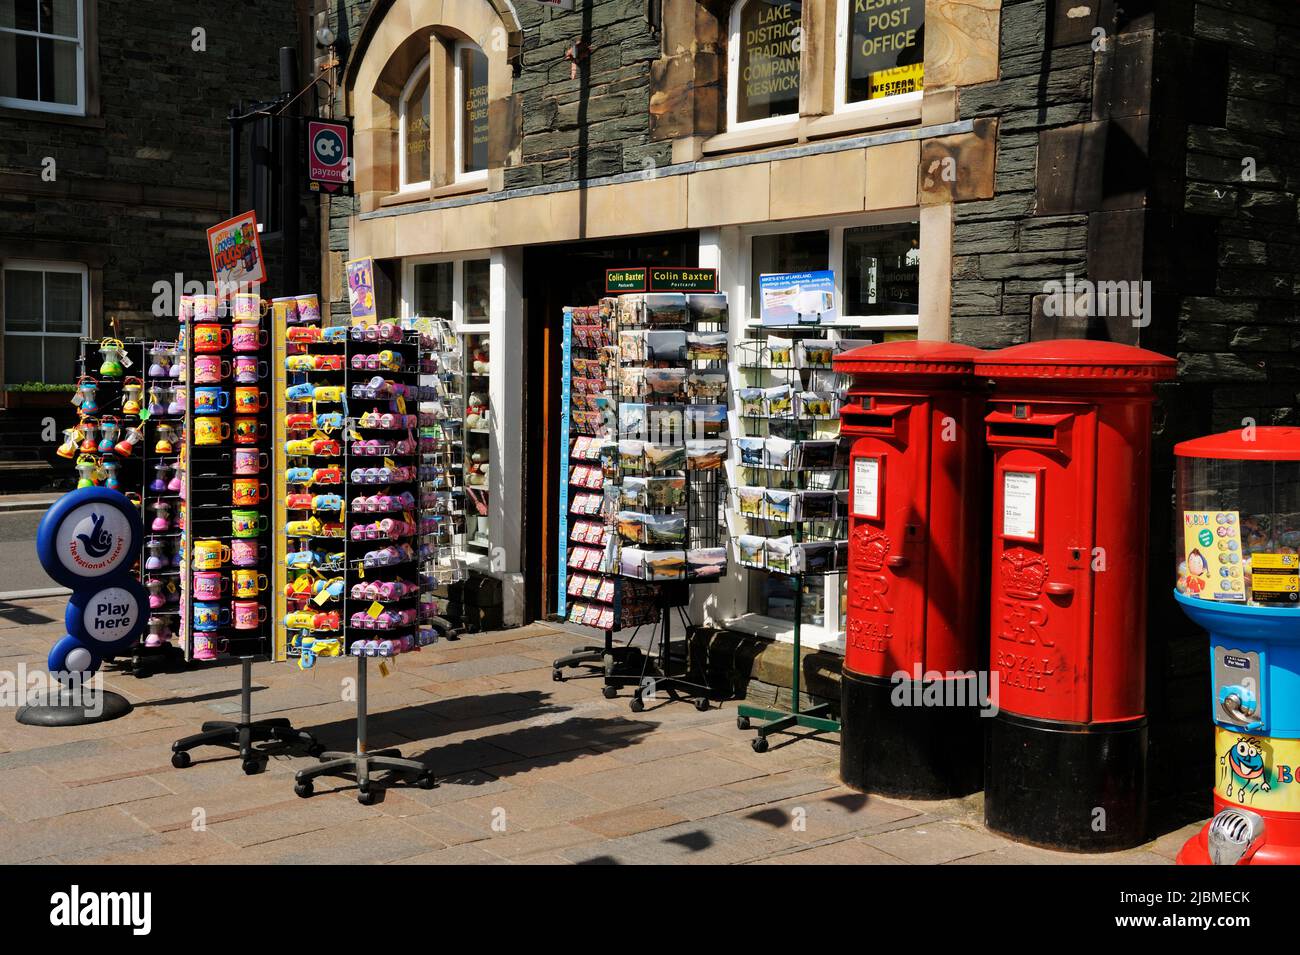 Tienda de recuerdos turísticos y oficina de correos en Keswick en el Distrito de los Lagos Cumbria Reino Unido Foto de stock